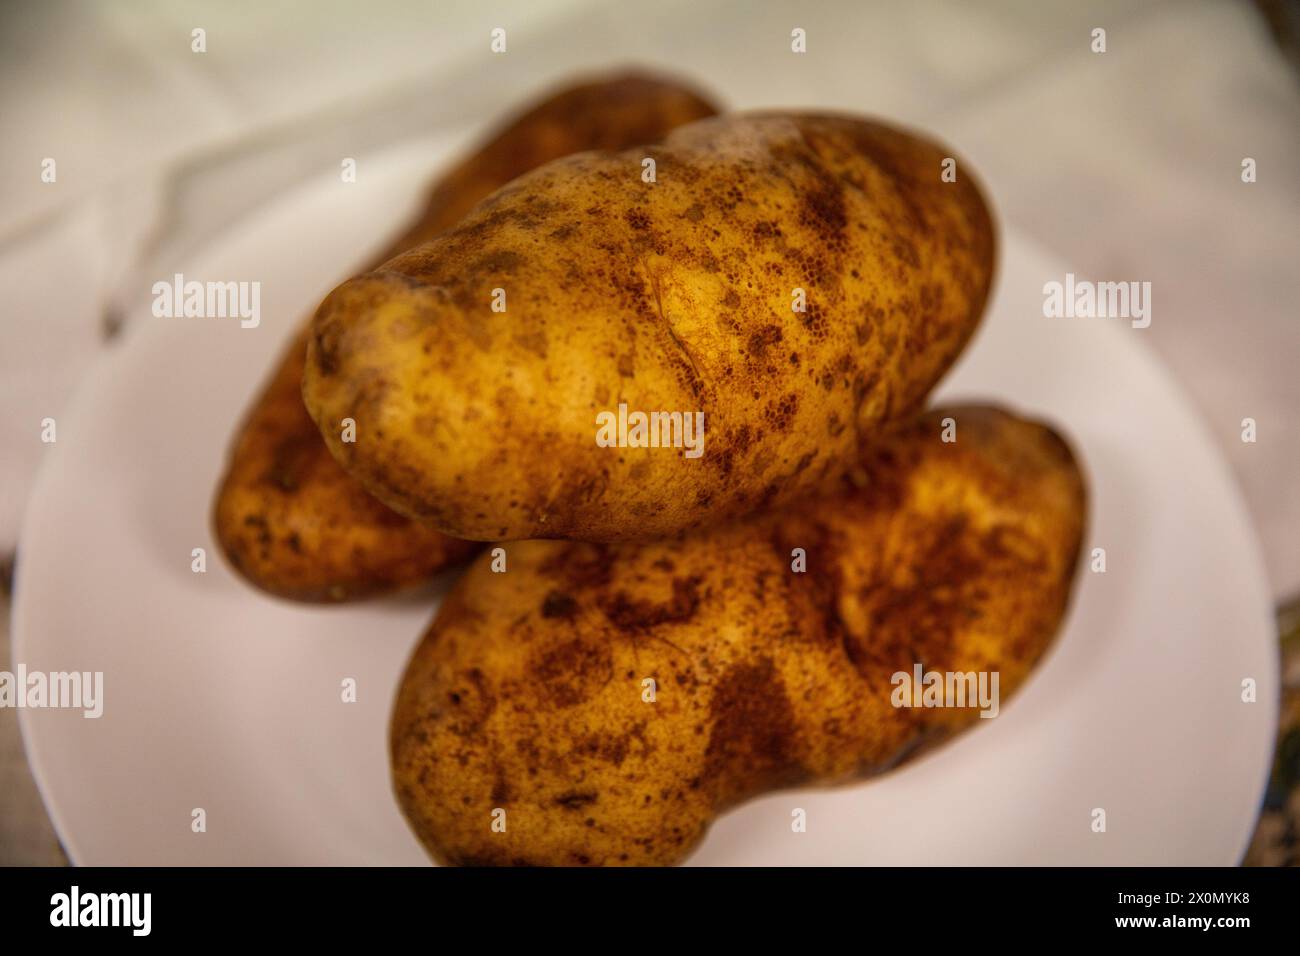 Trois pommes de terre Russet prêtes à être cuites Banque D'Images